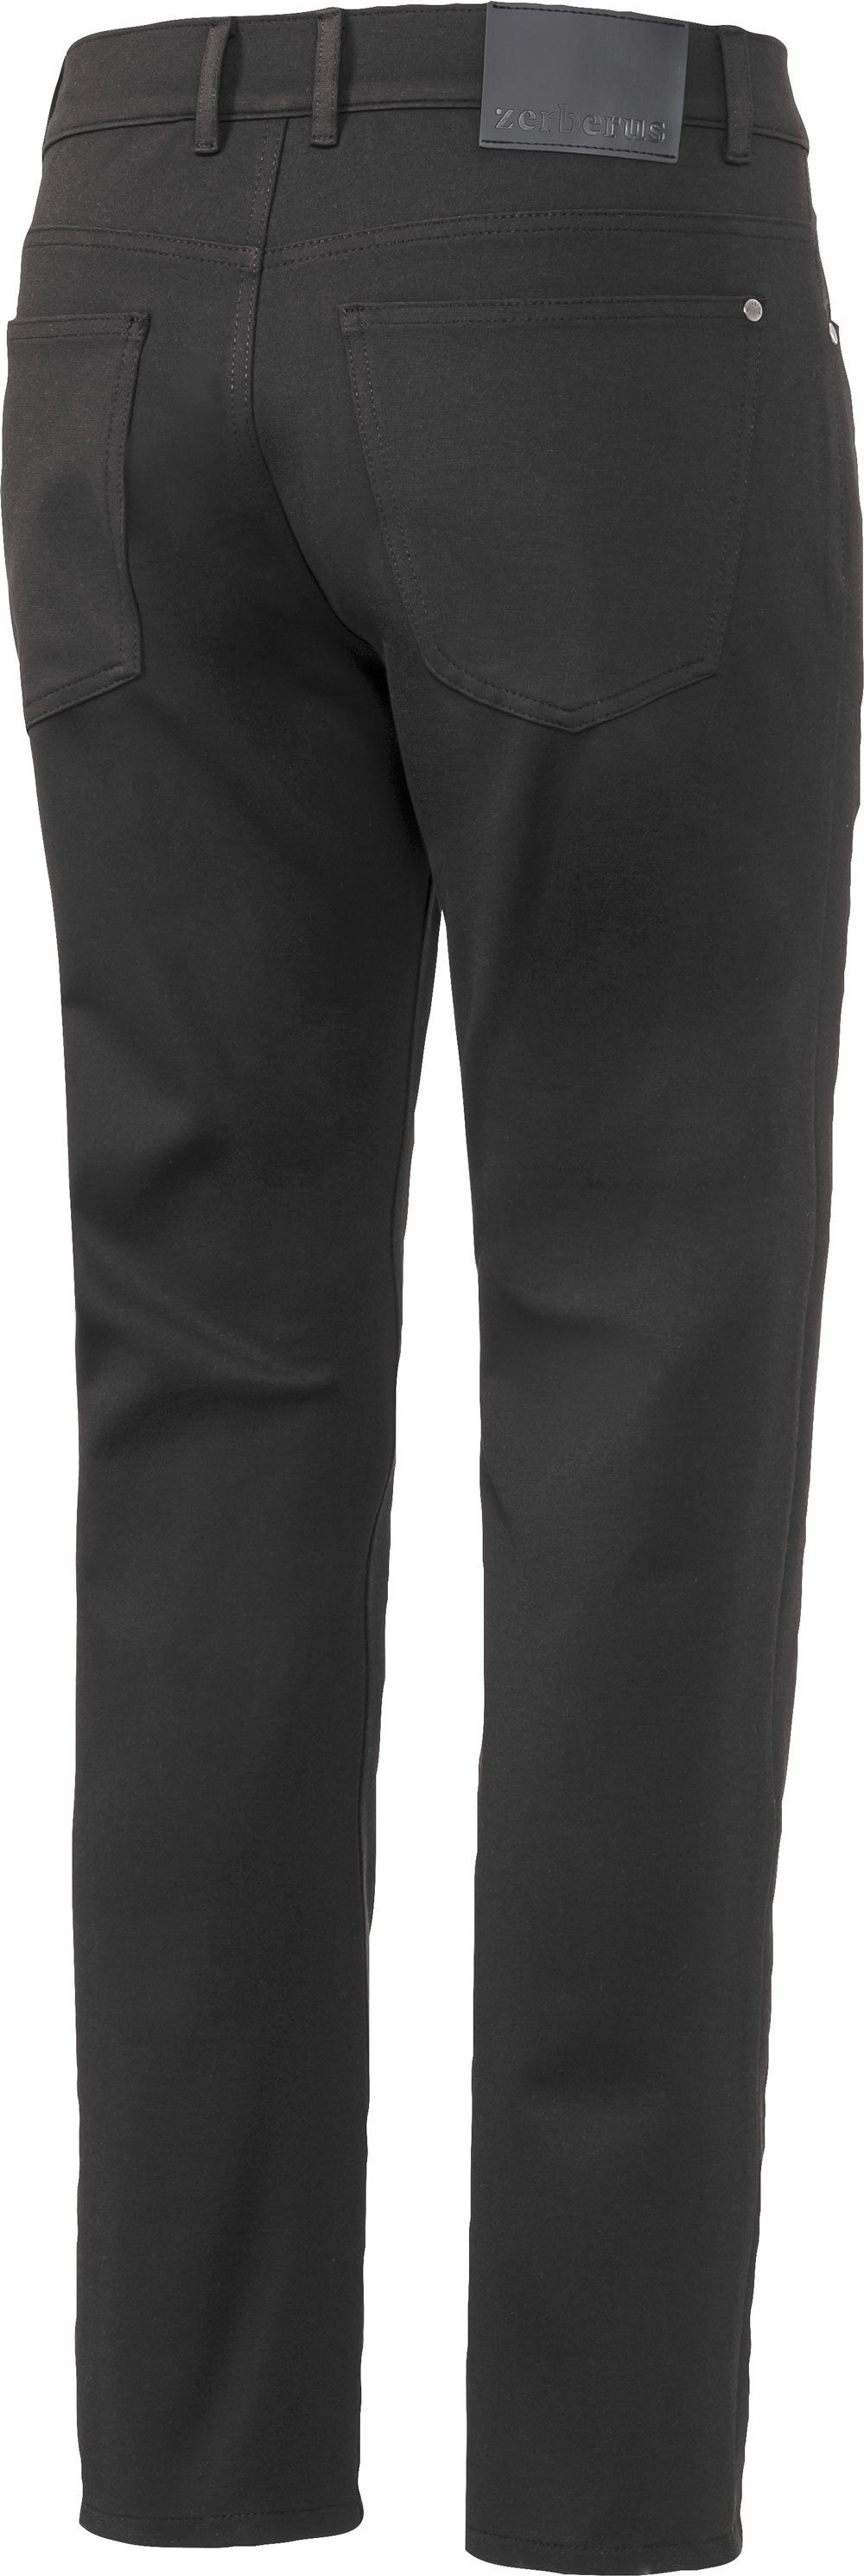 perfekte Jerseyhose lässigen 5-Pocket-Stil Passform, Zerberus im schwarz